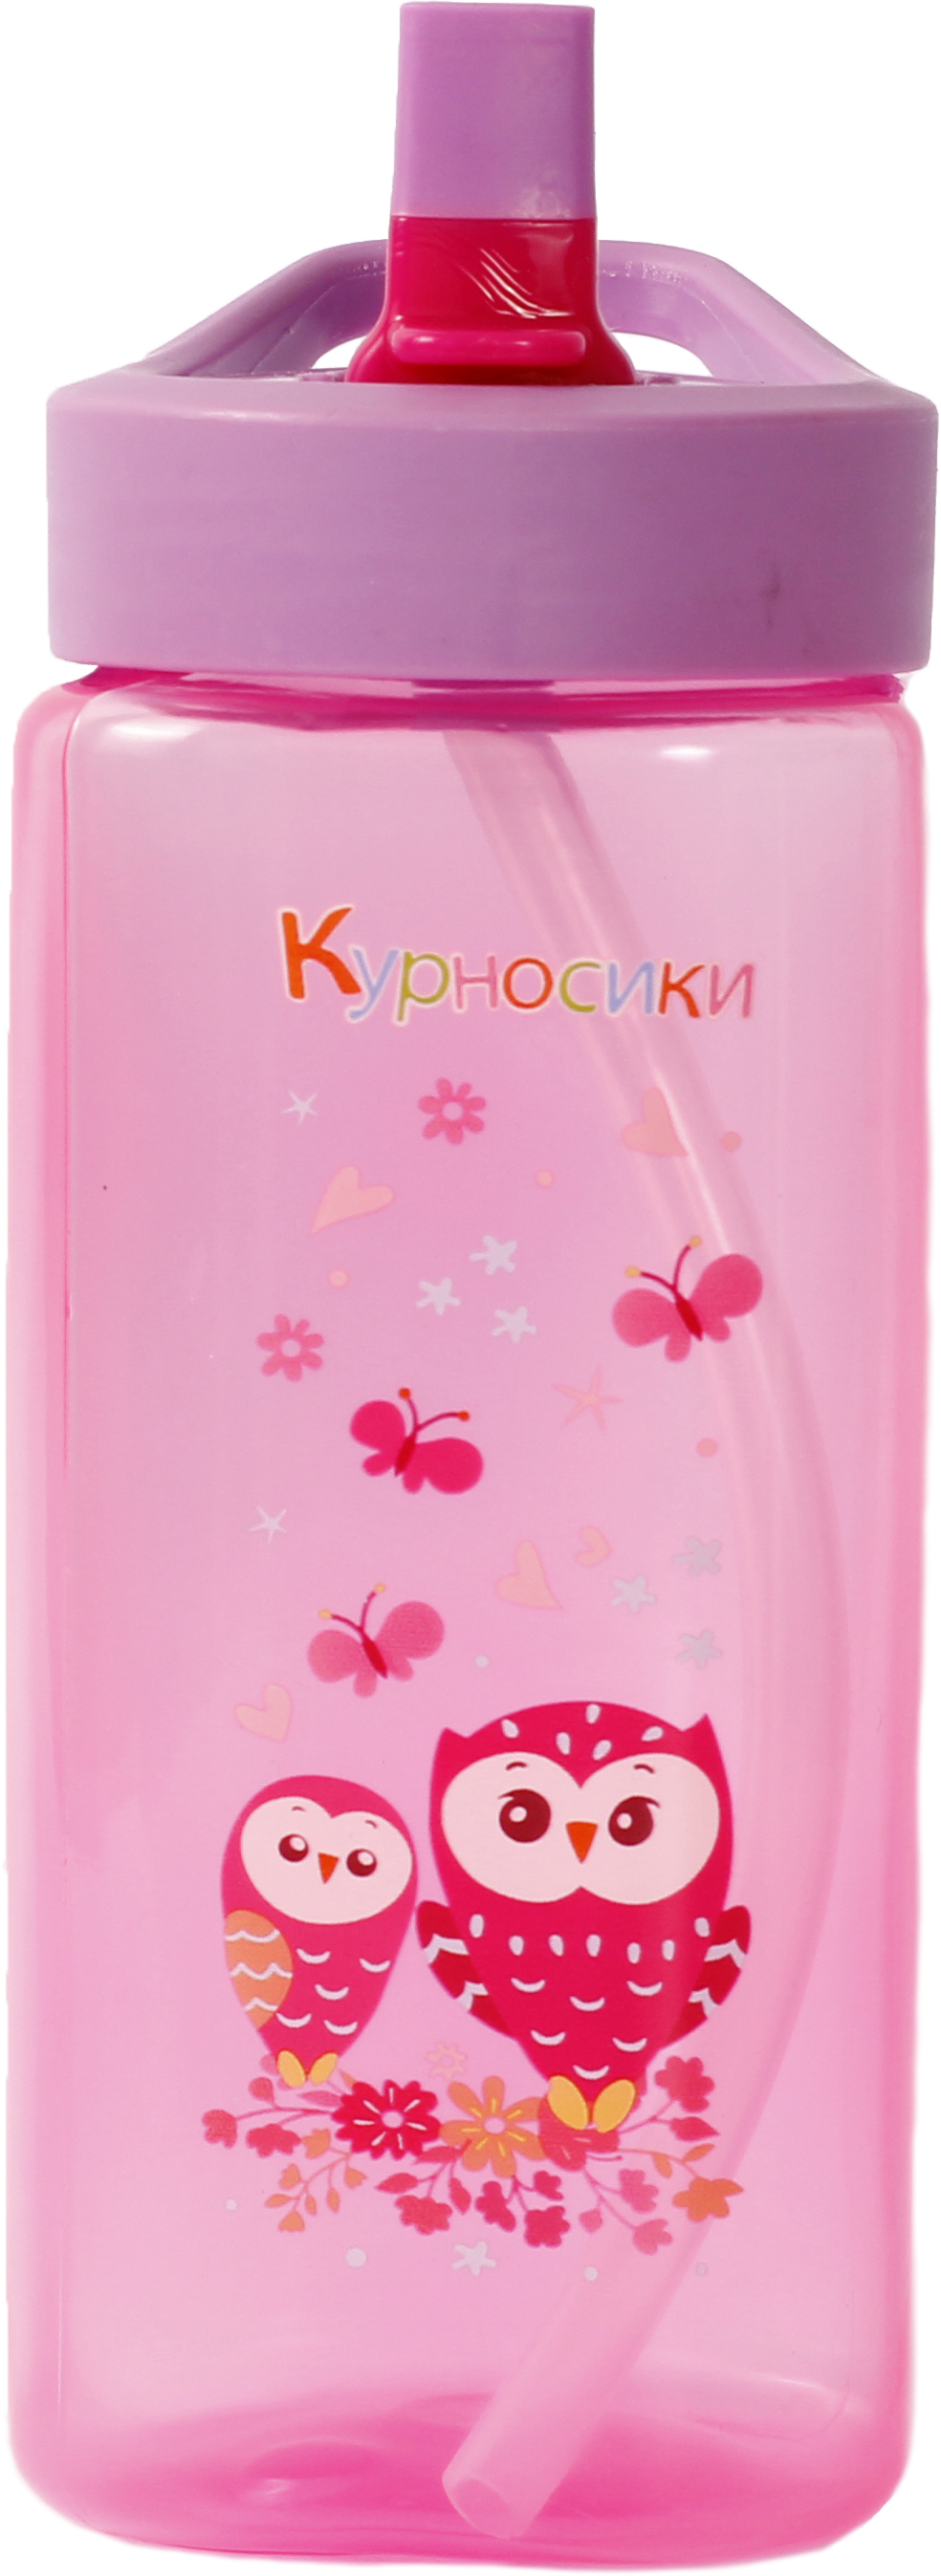 Поїльник Курносики, зі складним носиком і силіконової соломинкою, від 9 міс., 420 мл, рожевий (7223 рож) - фото 2